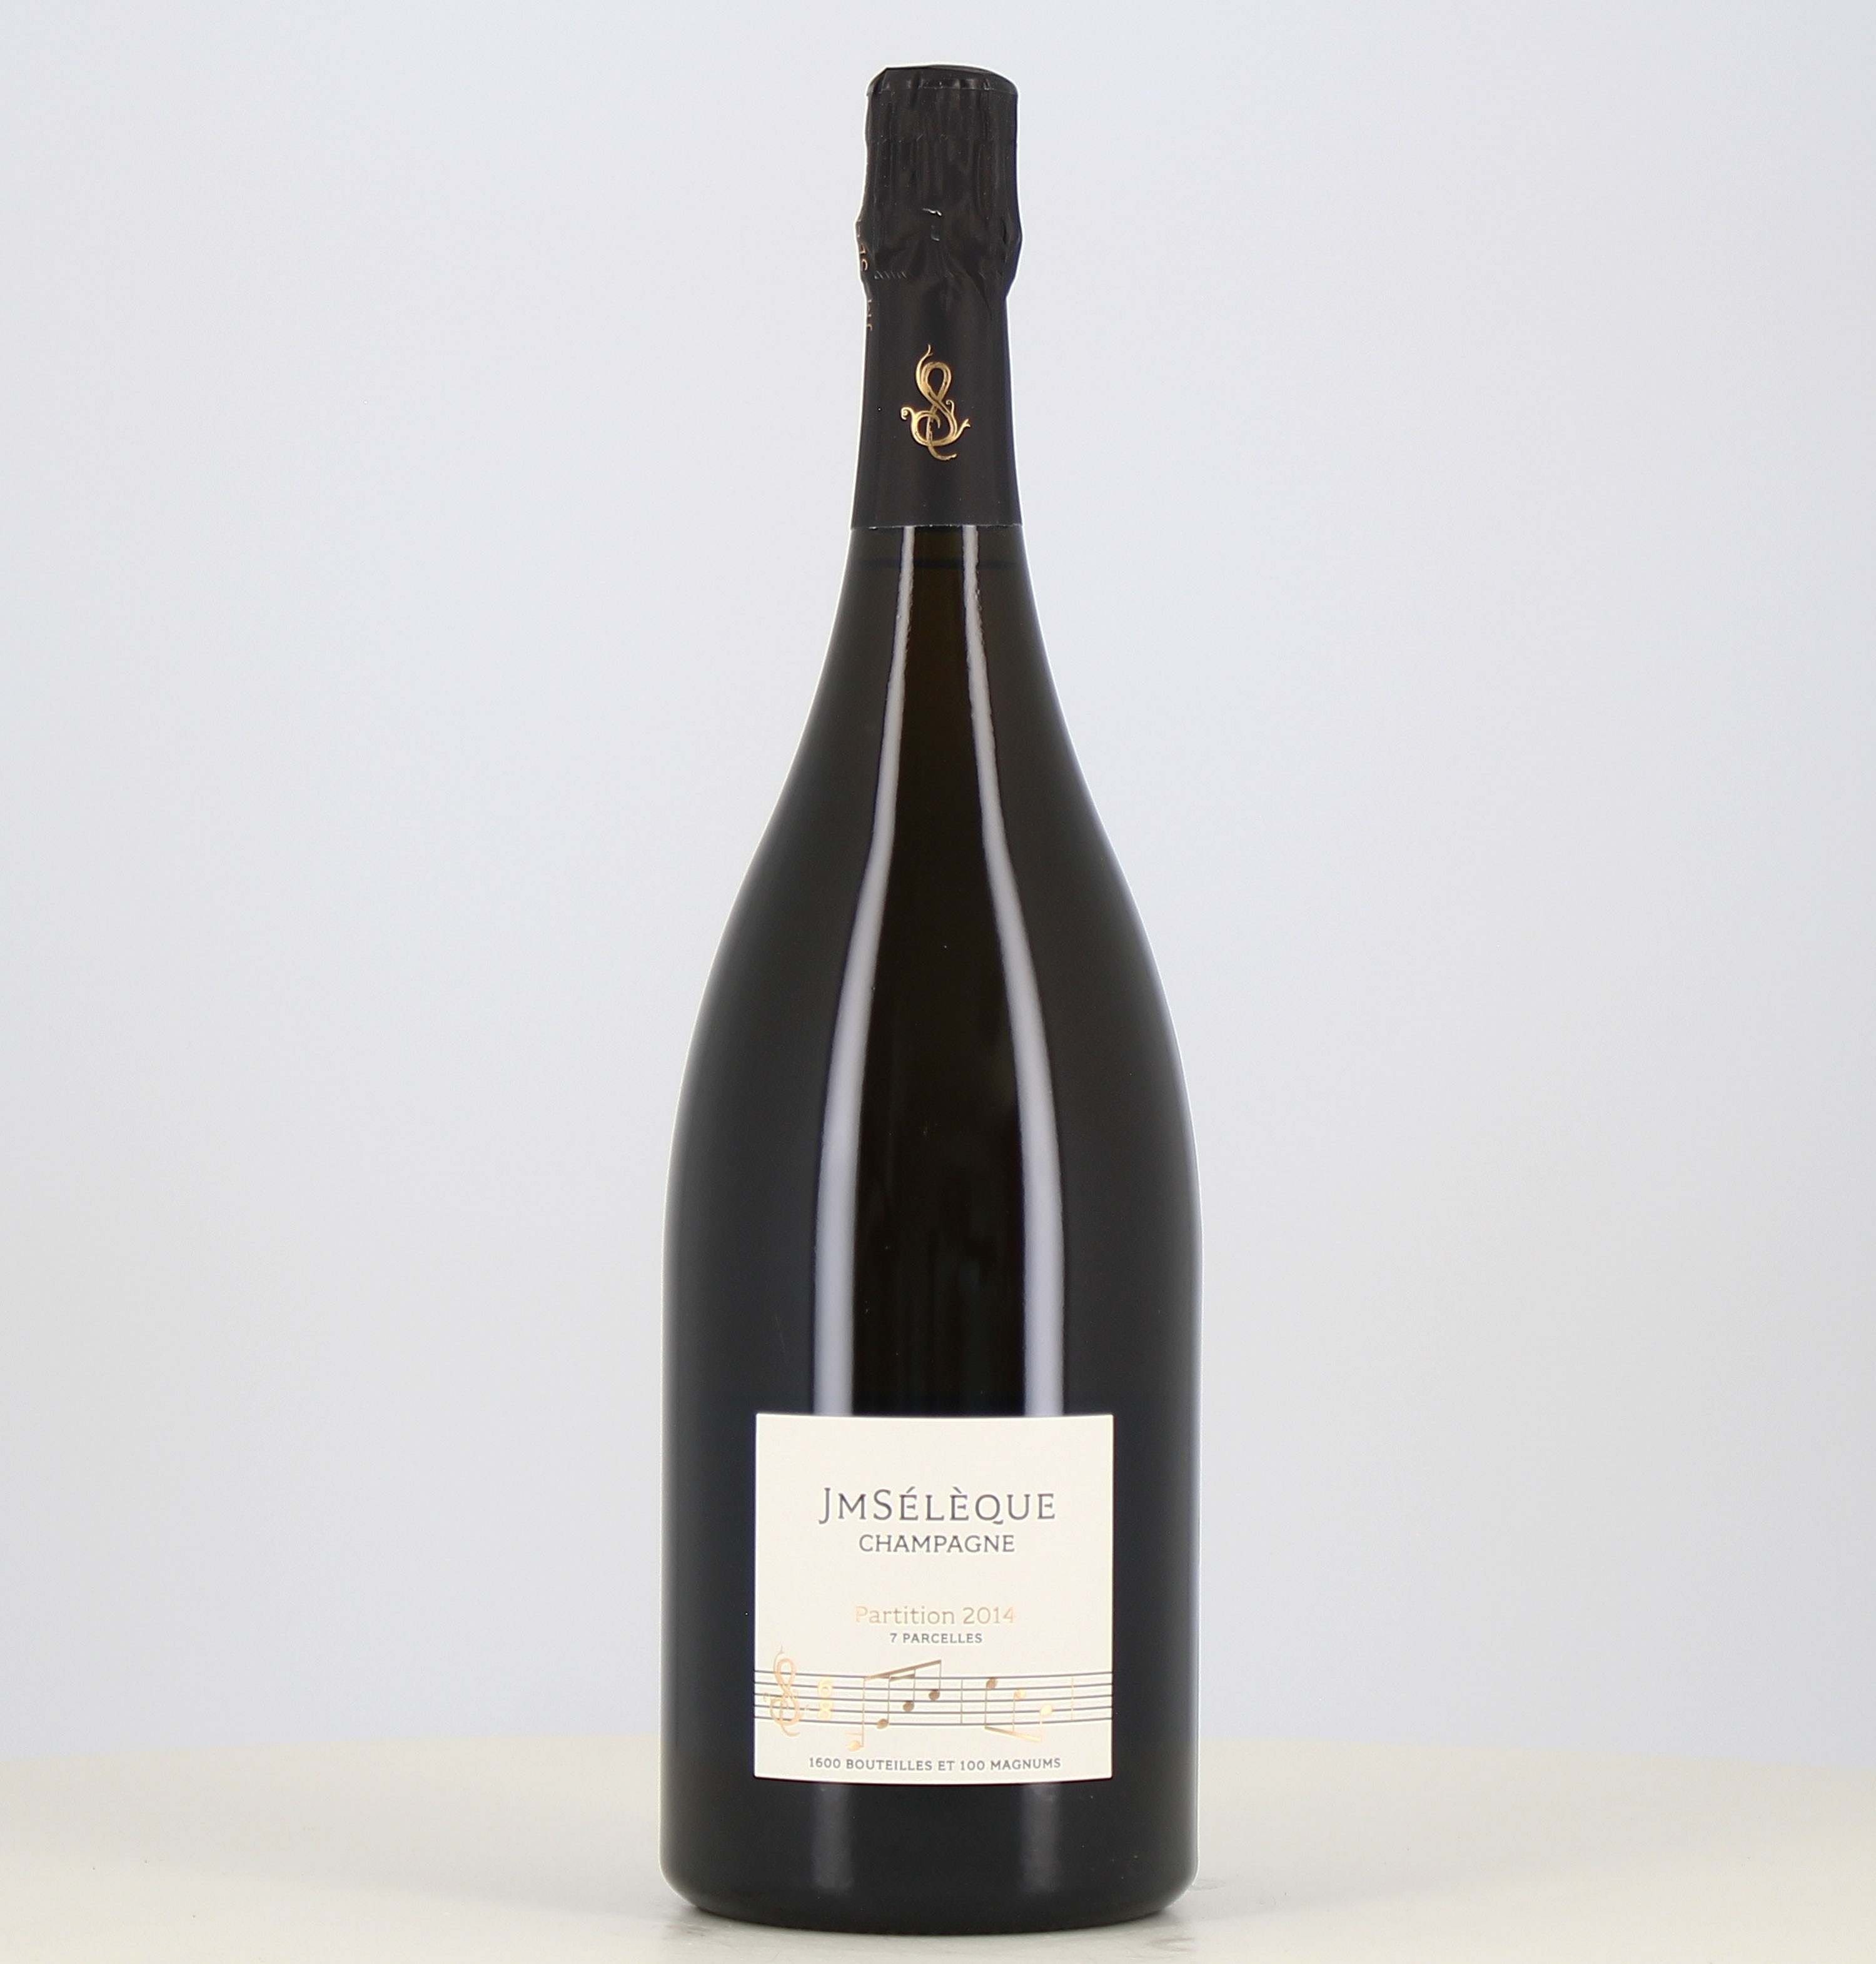 Magnum Champagne JM Seleque Partition 2014 